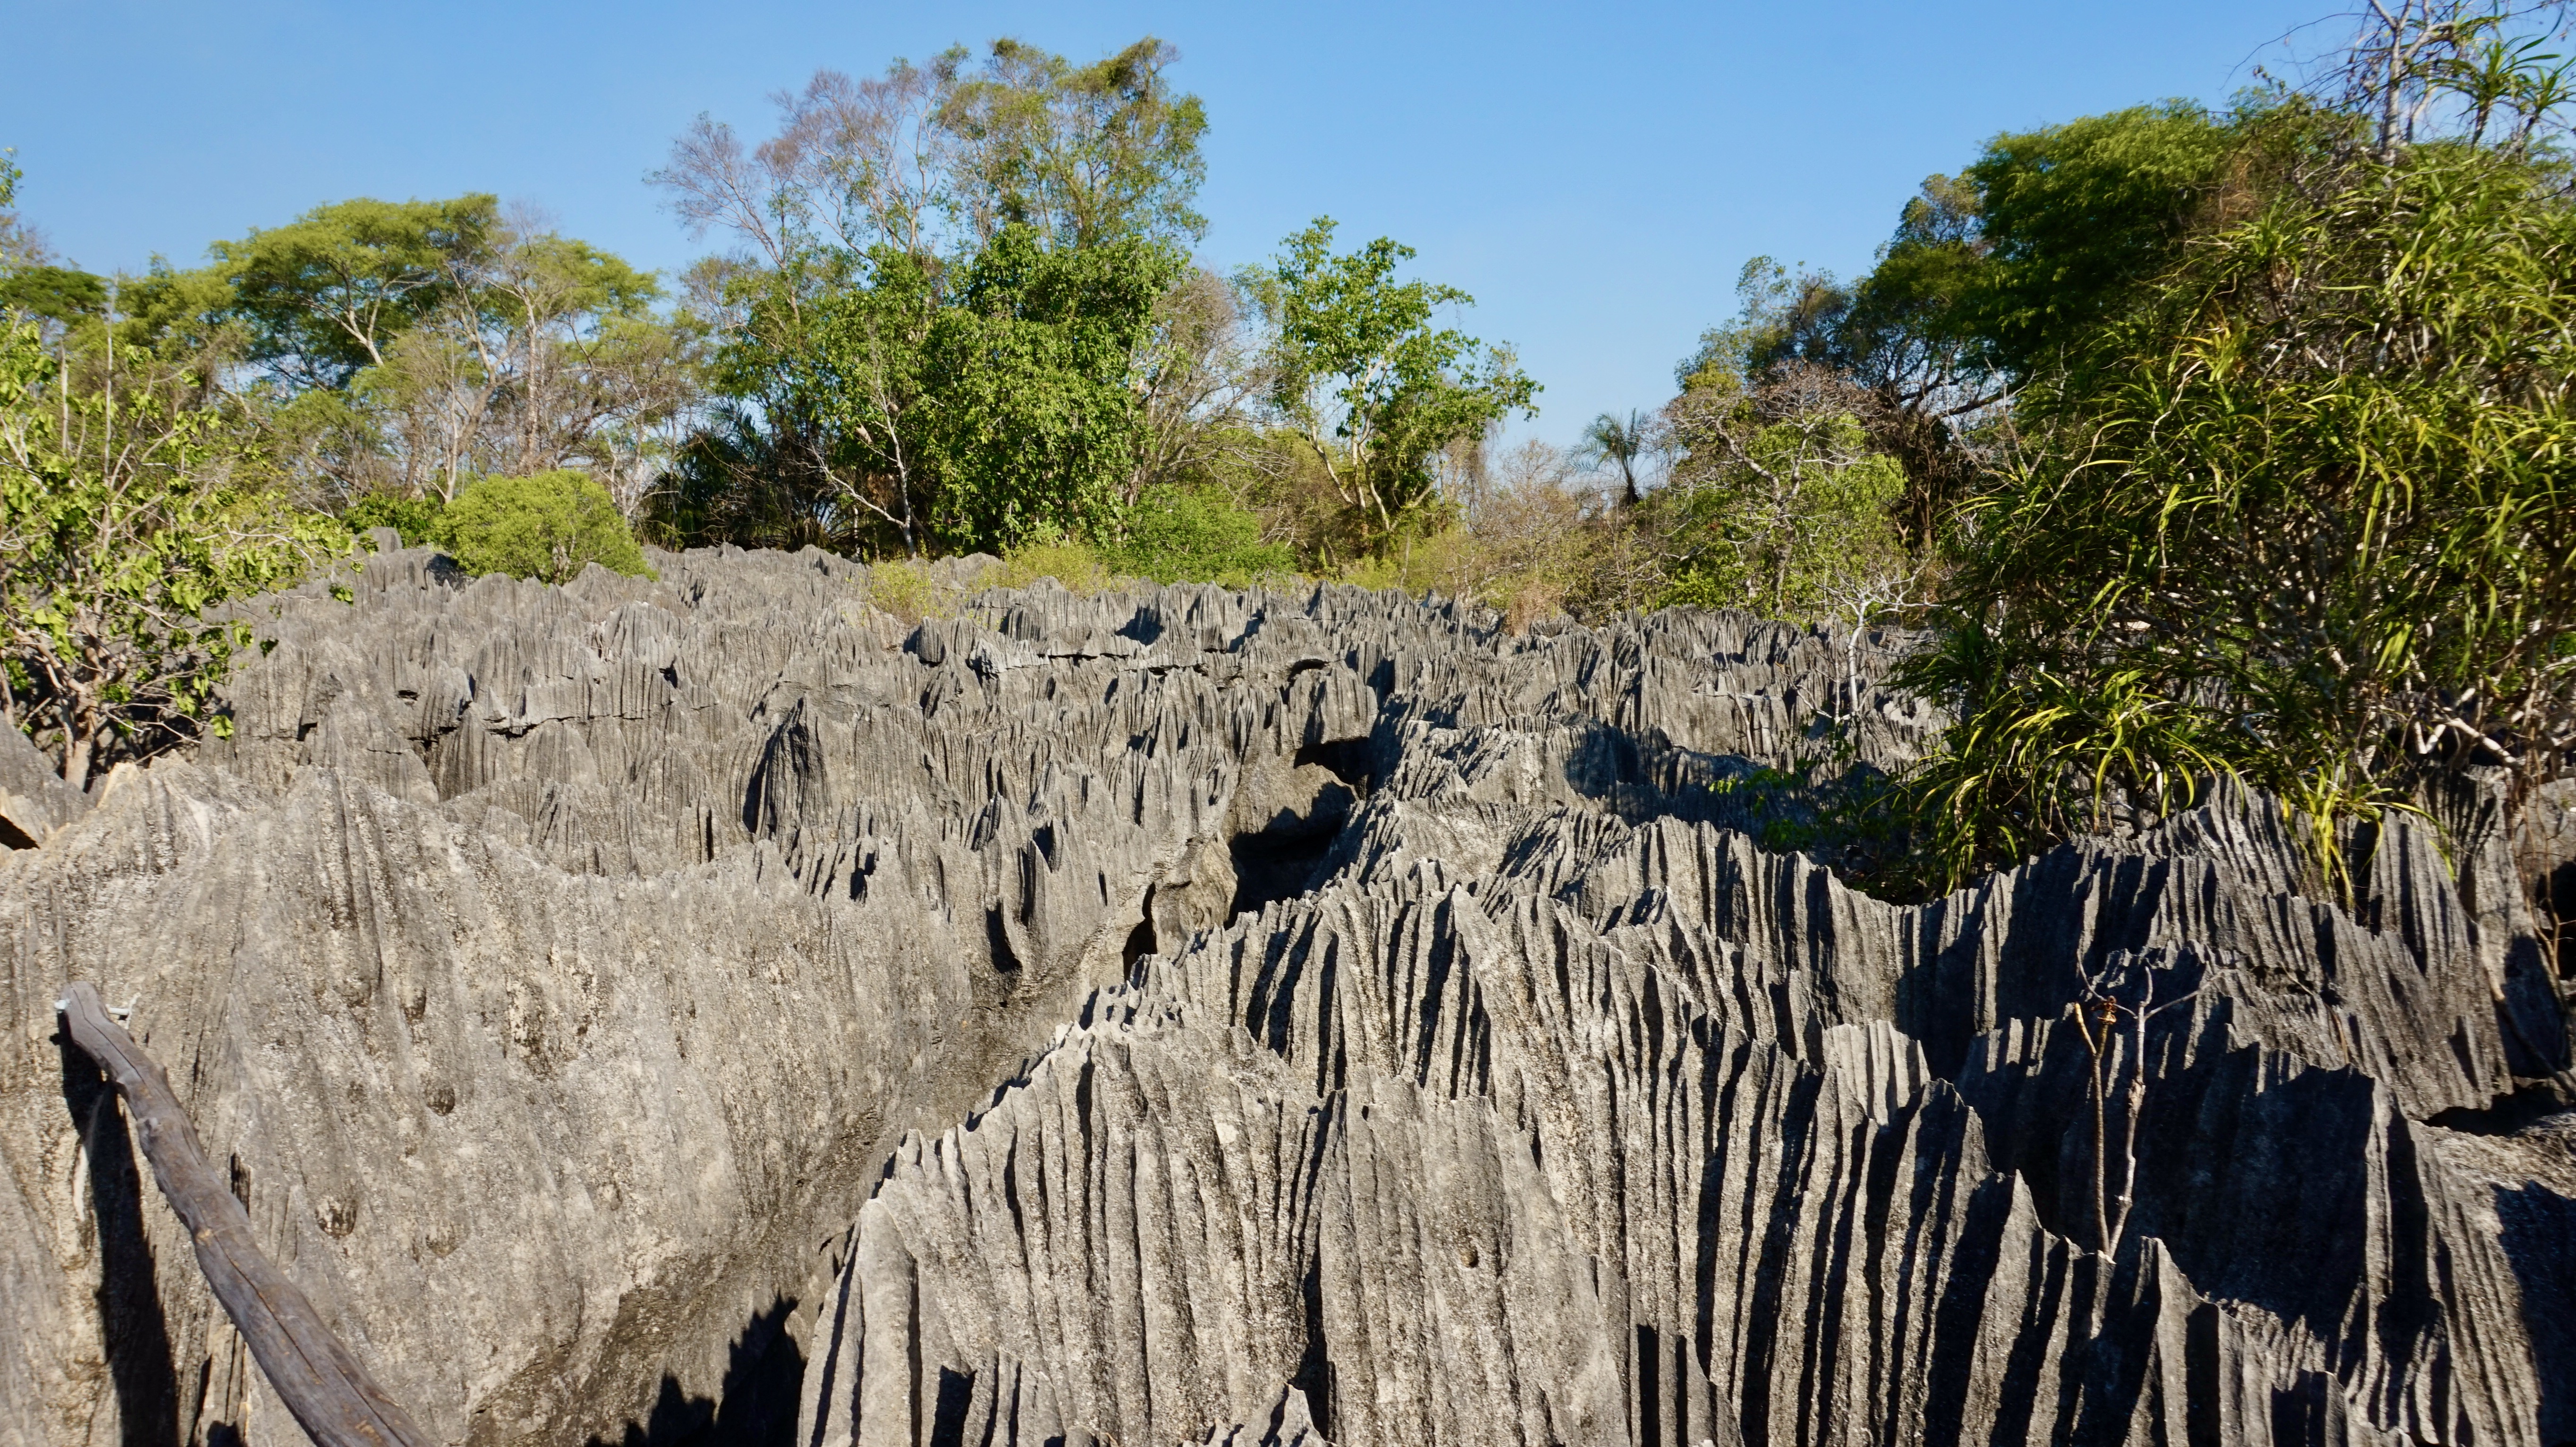 Tsingy de Bemaraha rock formations